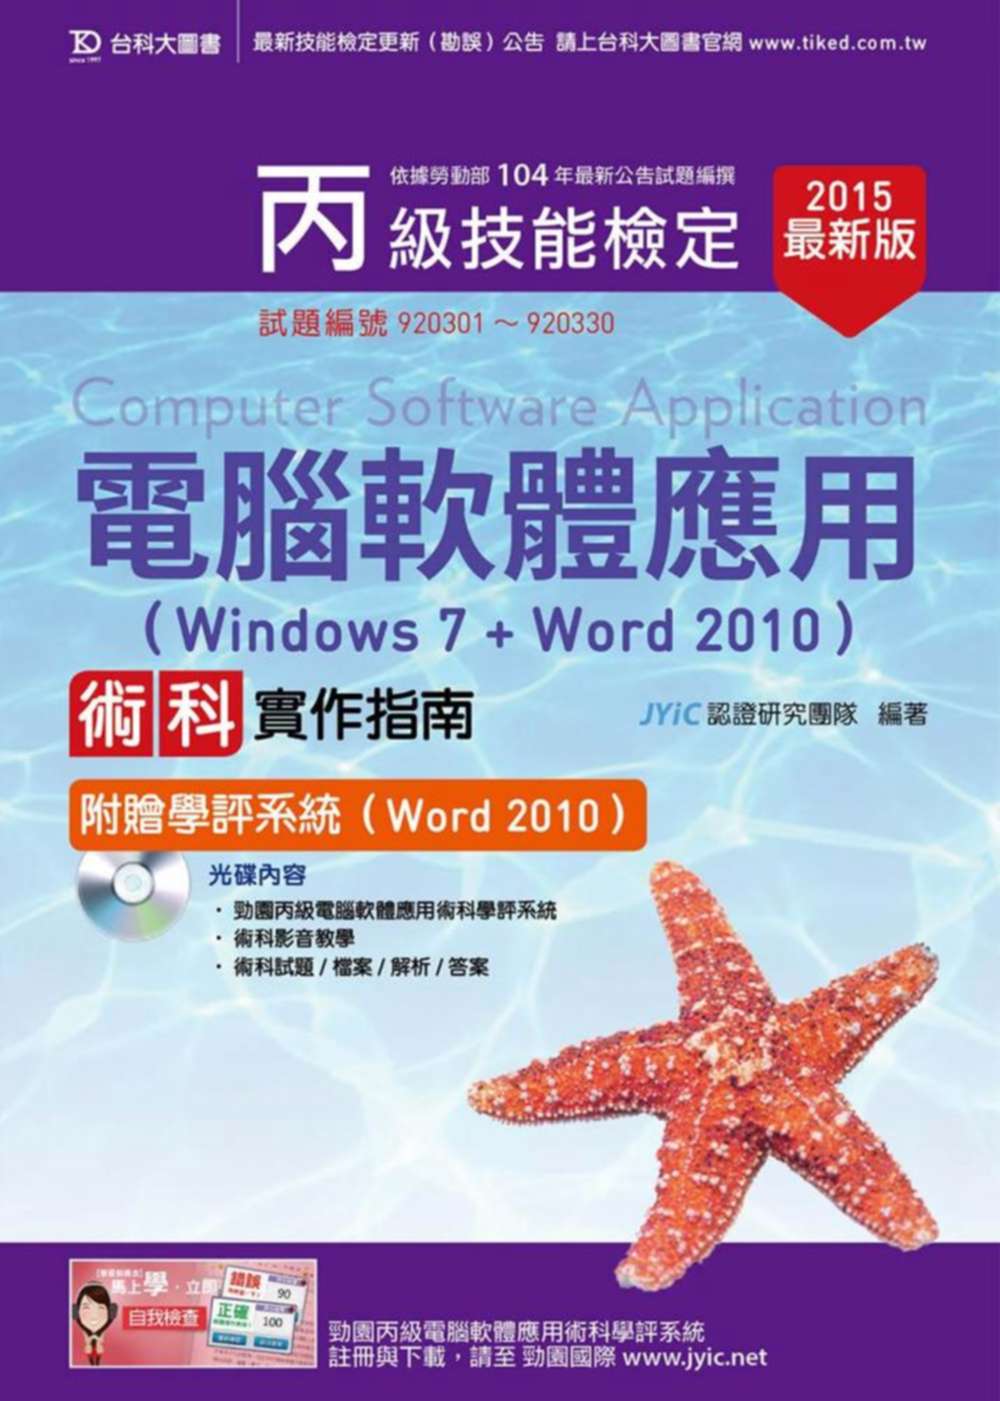 丙級電腦軟體應用術科實作指南(Windows 7 + Word 2010)附贈學評系統(Word 2010 )(2015年最新版)